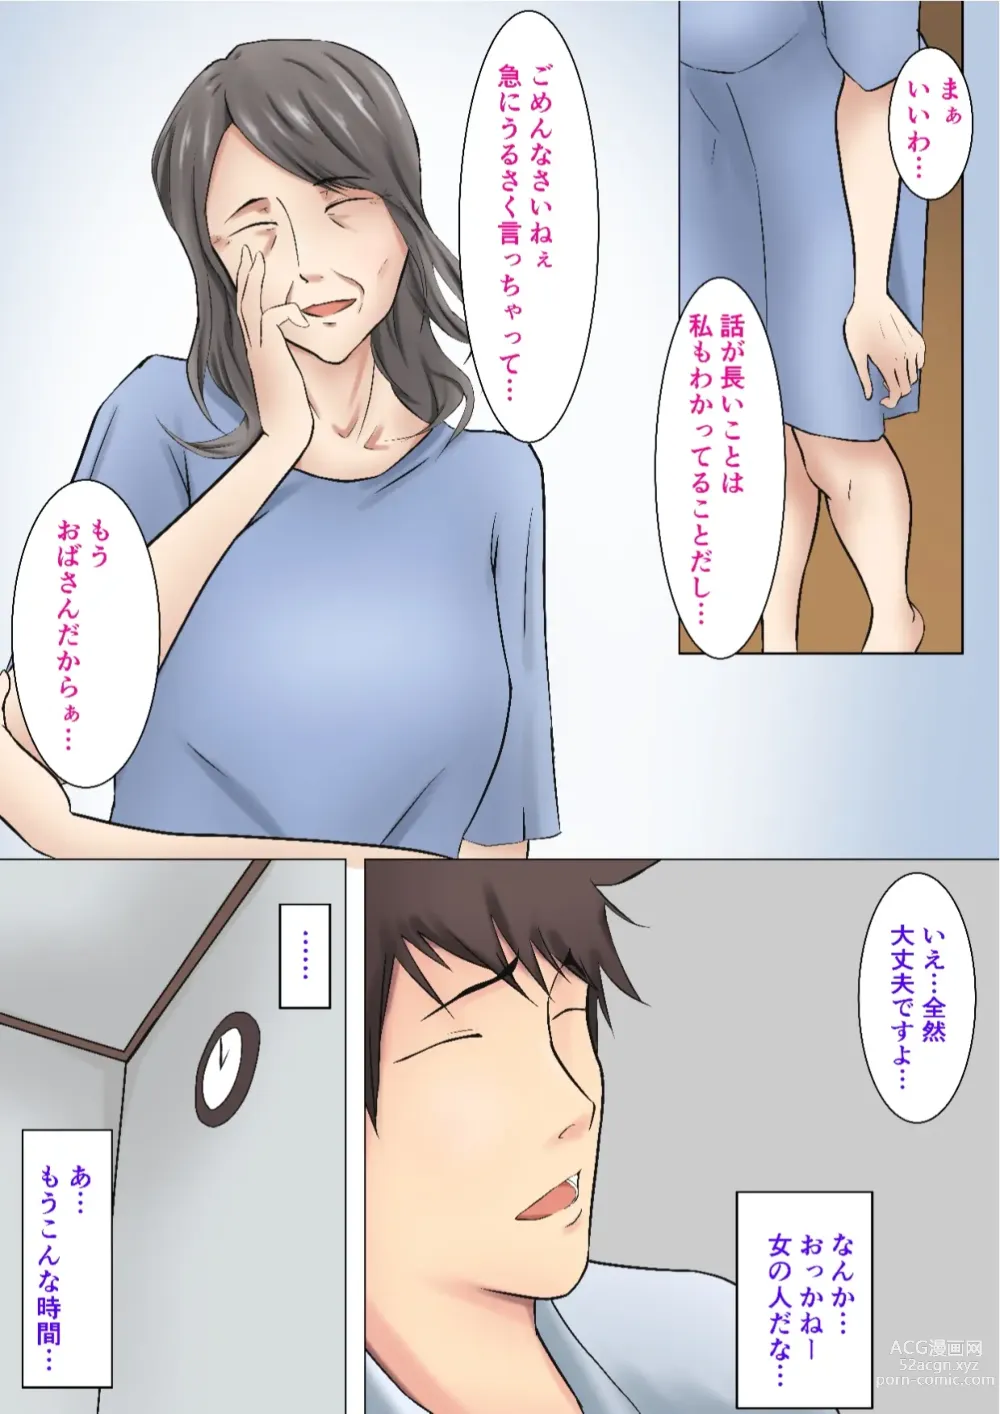 Page 7 of doujinshi Musoji kara Ukerareru Sei Service Delivery Helper